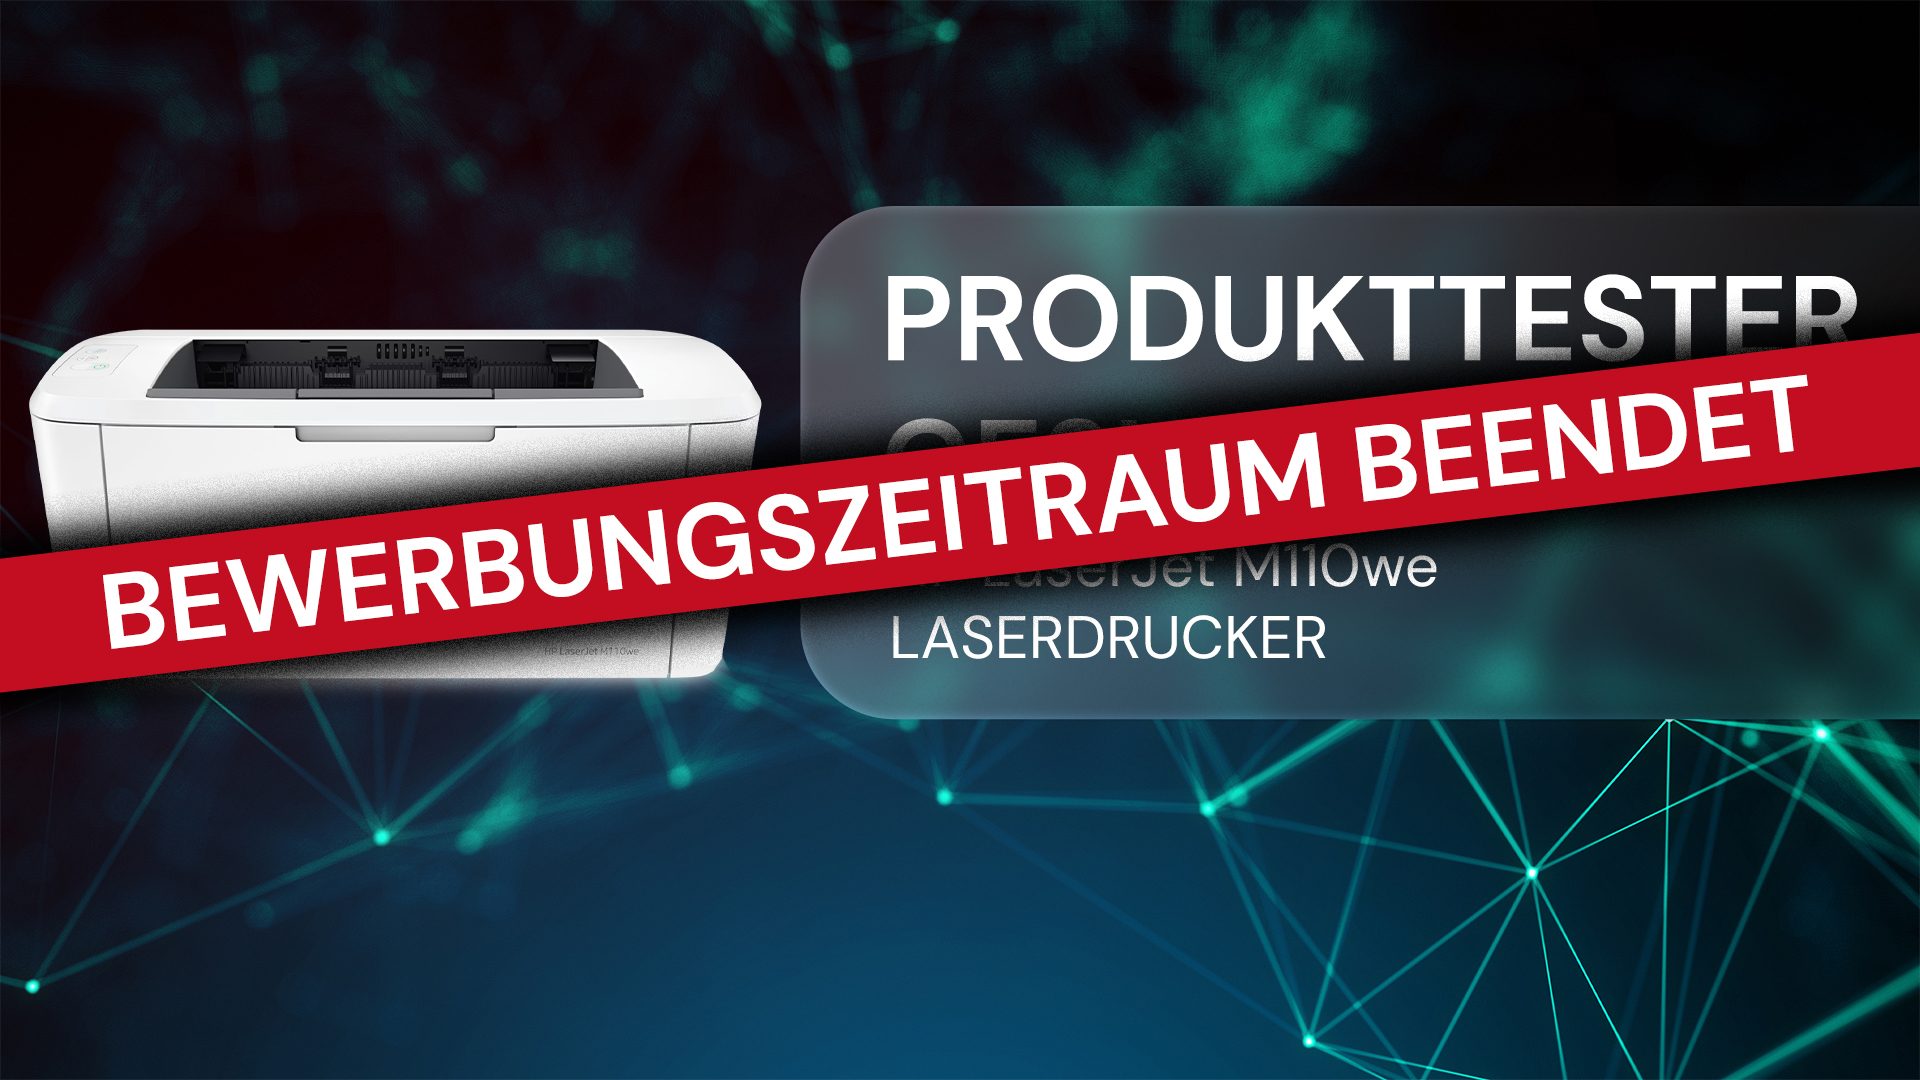 Kostenloser Produkttest zum HP LaserJet Partner OFFICE @ Laserdrucker M110we